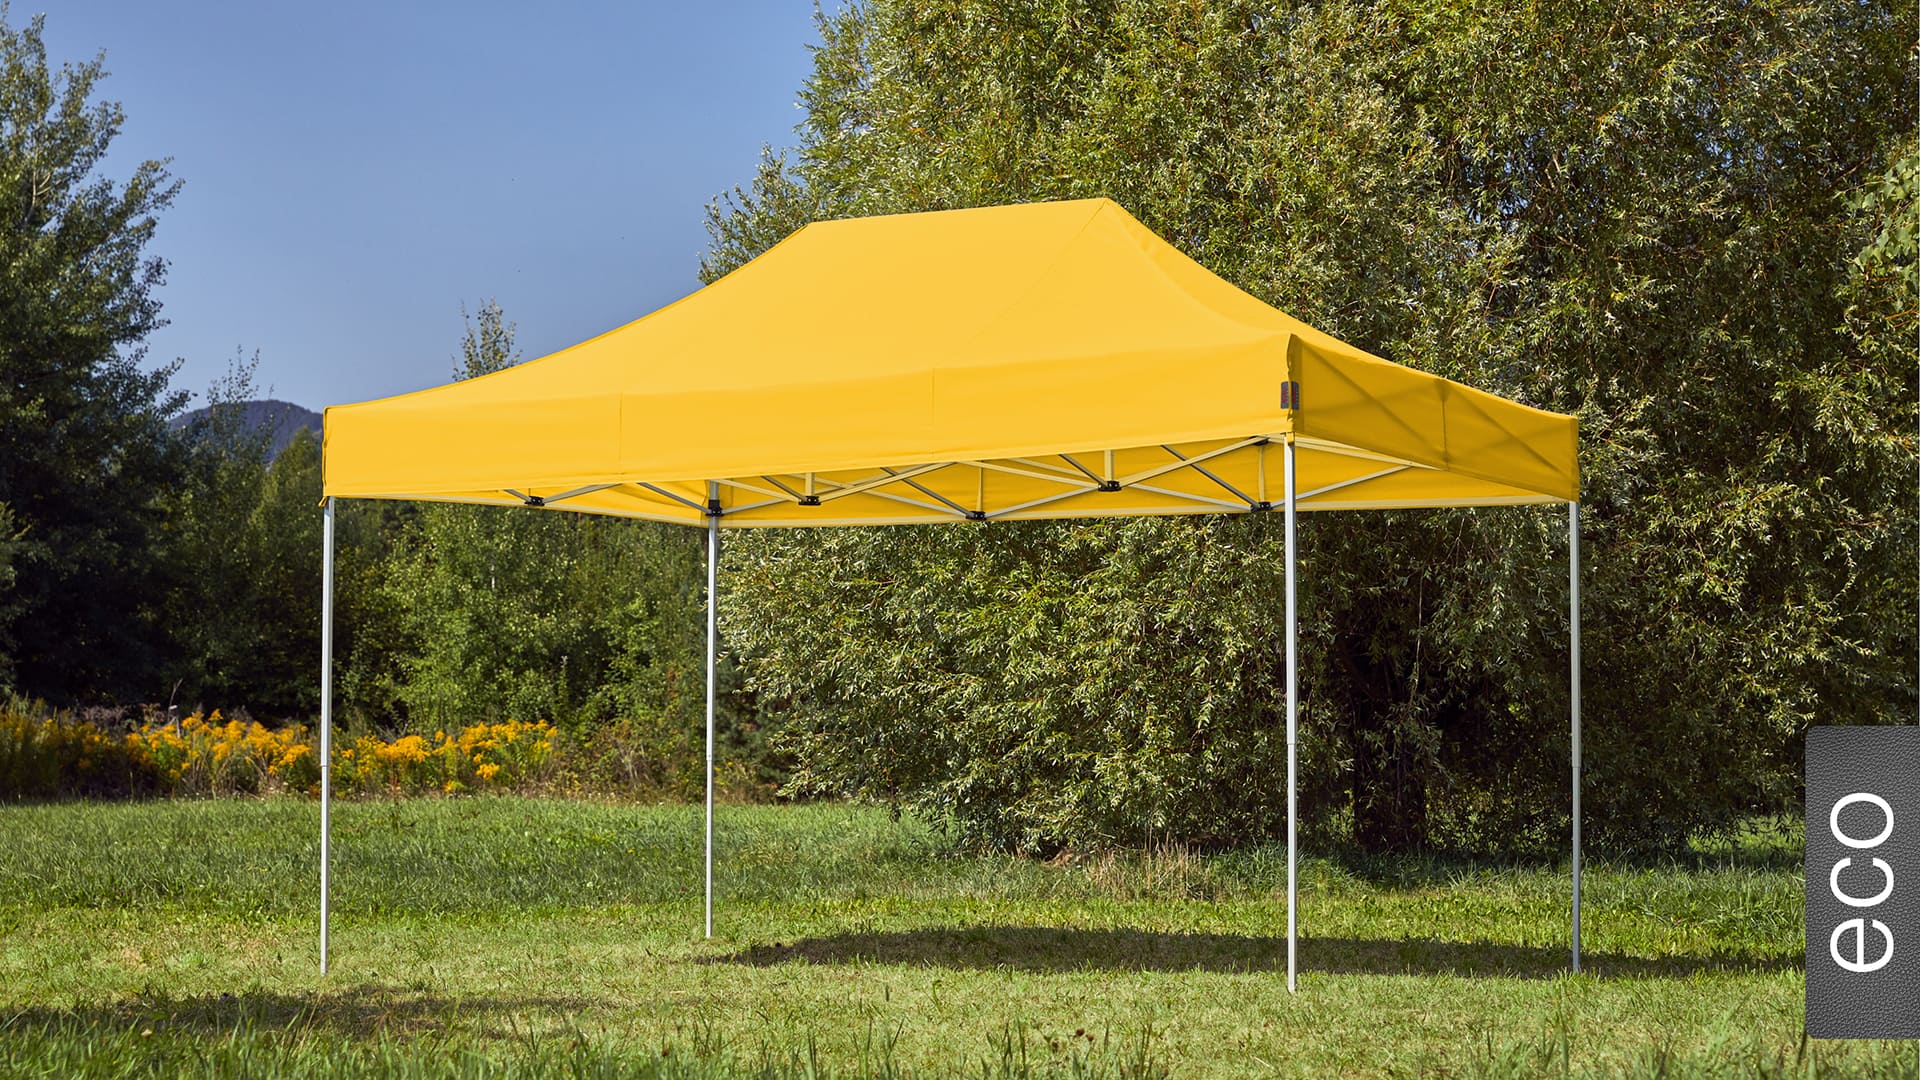 Der 4,5x3 Faltpavillon der Produktlinie eco mit einem gelben Dach aufgestellt im Garten.